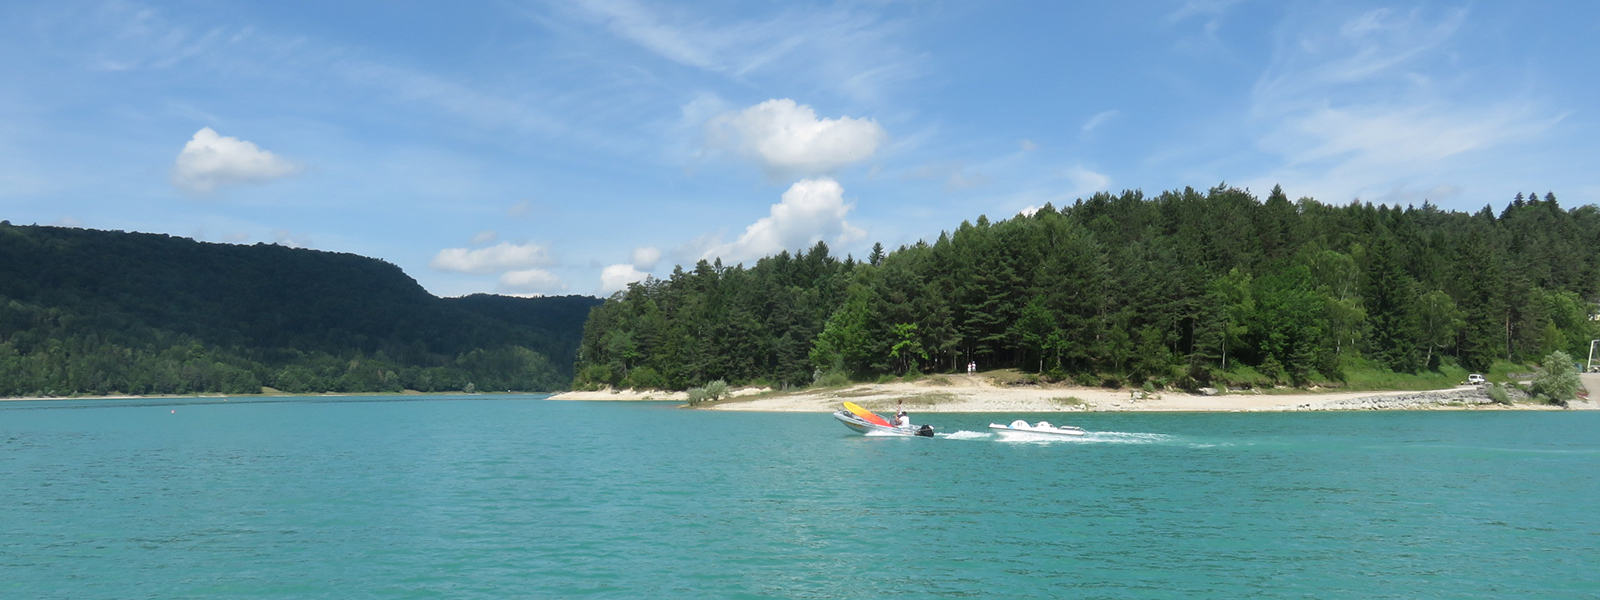 Vacances d'été dans le Haut-Jura - Les Chalets du Lac de Vouglans - Cap France